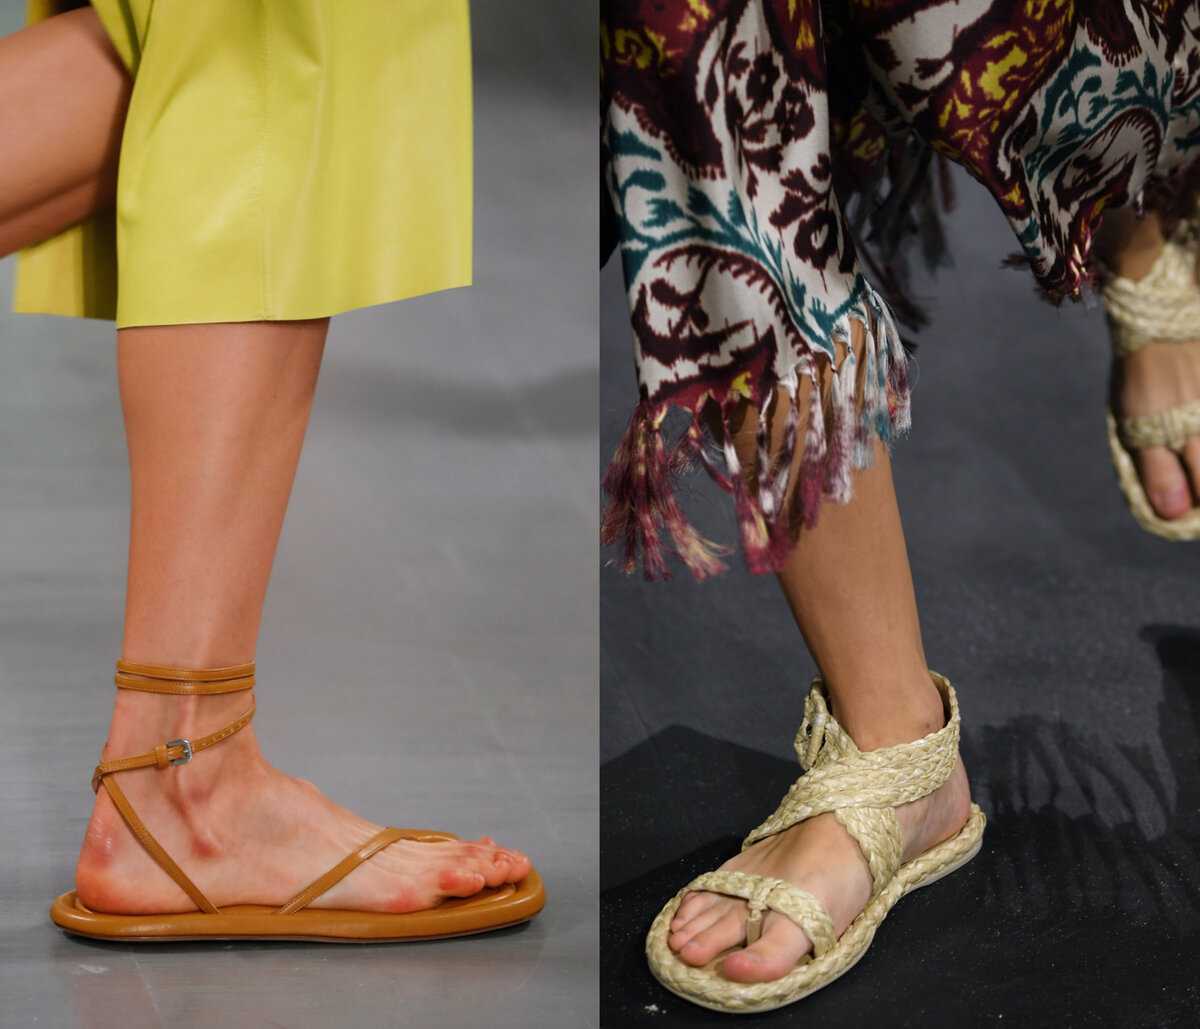 Модная женская обувь, весна-лето 2021 - тренды и новинки (50 фото)